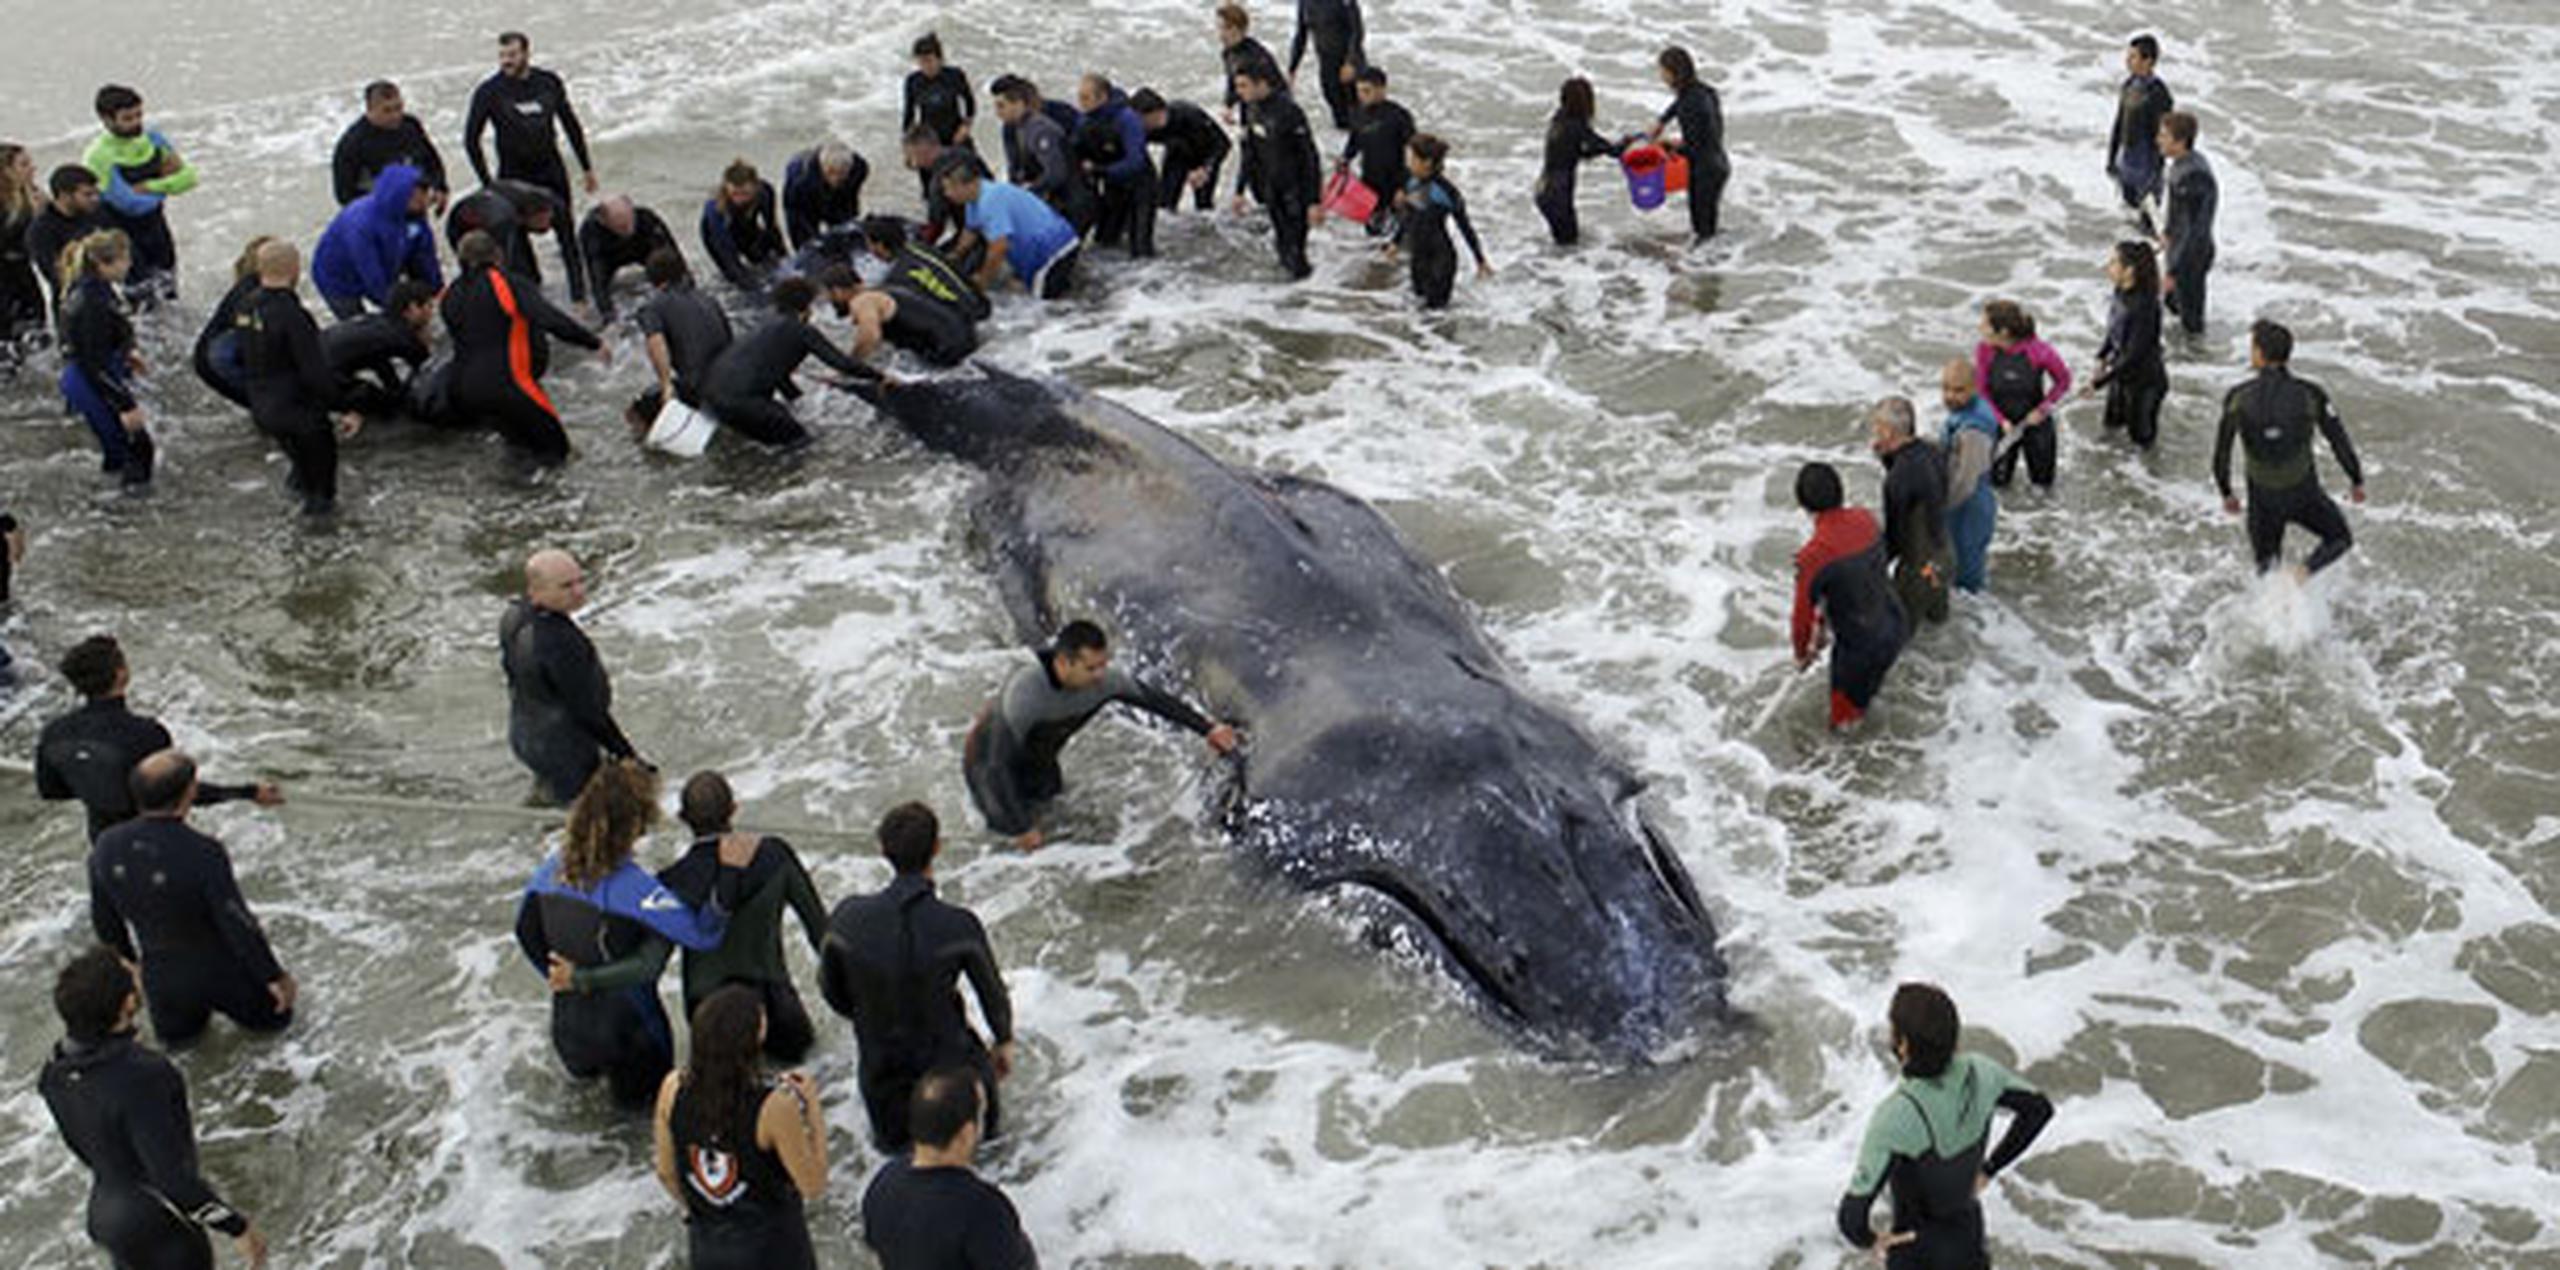 Según expertos los encallamientos de cetáceos ocurren cuando están enfermos o cuando se desorientan. (AP)